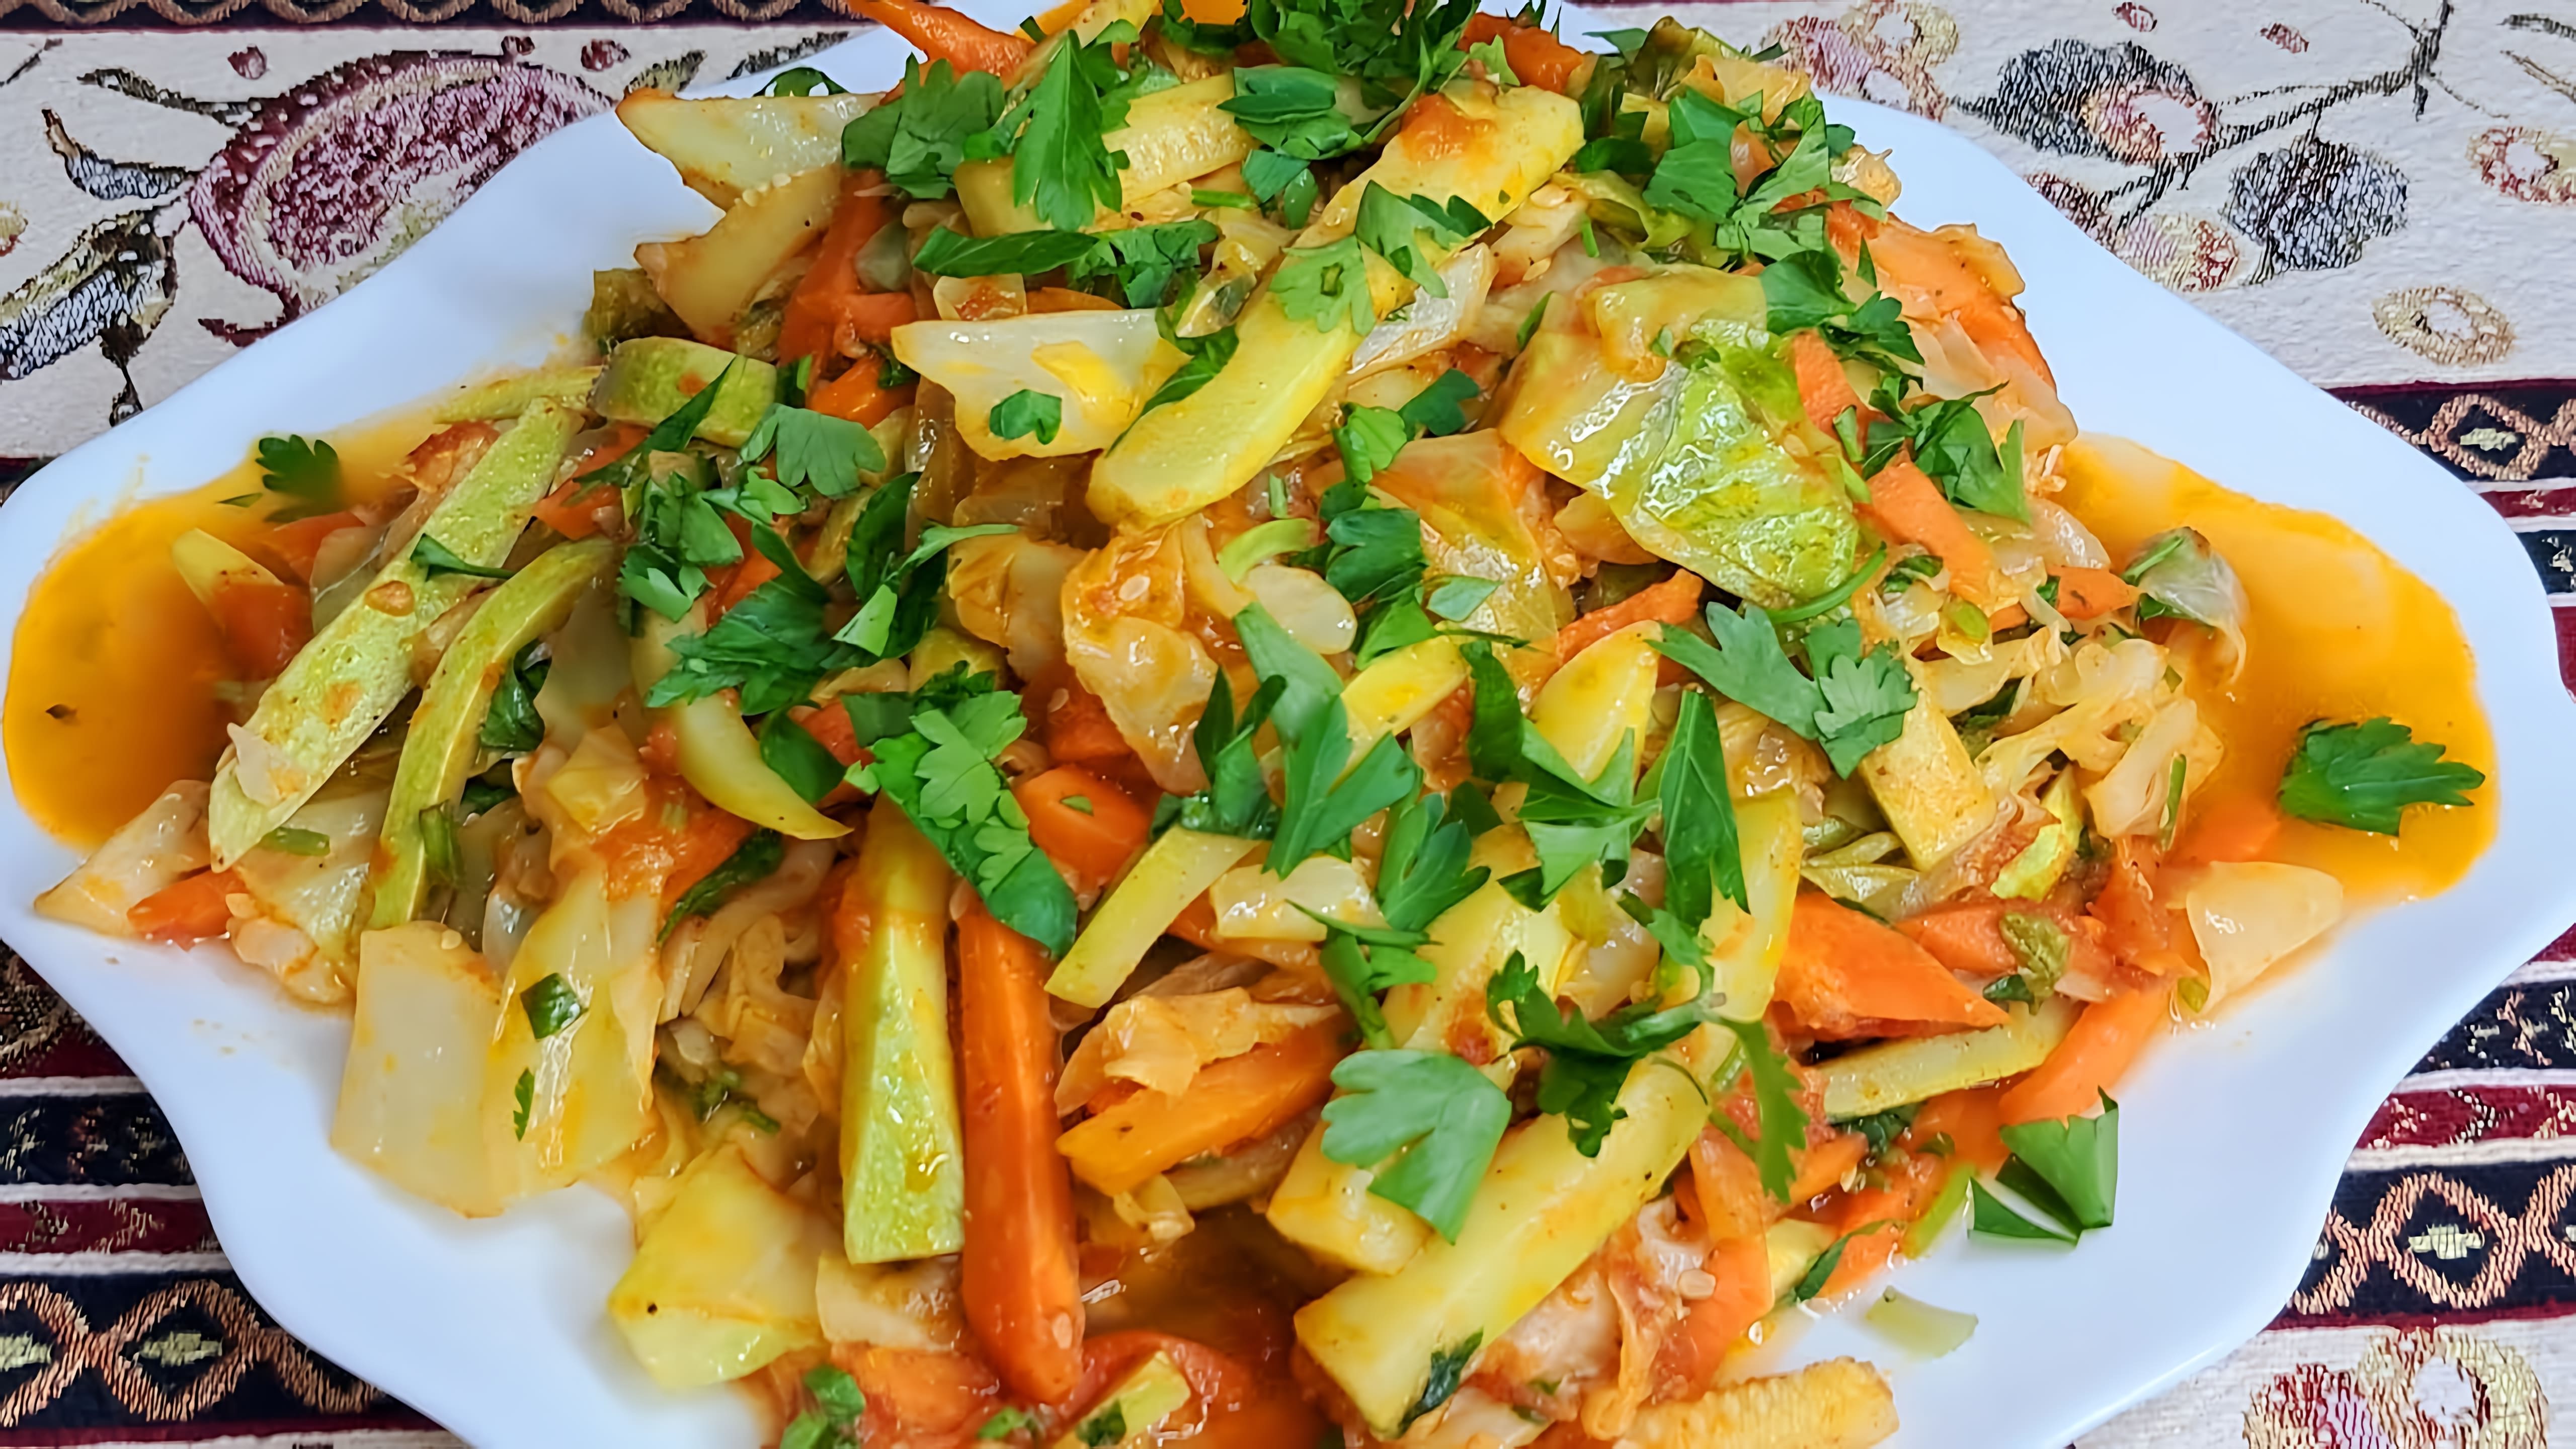 В этом видео демонстрируется процесс приготовления овощного рагу с кабачками, помидорами, морковью и молодой капустой